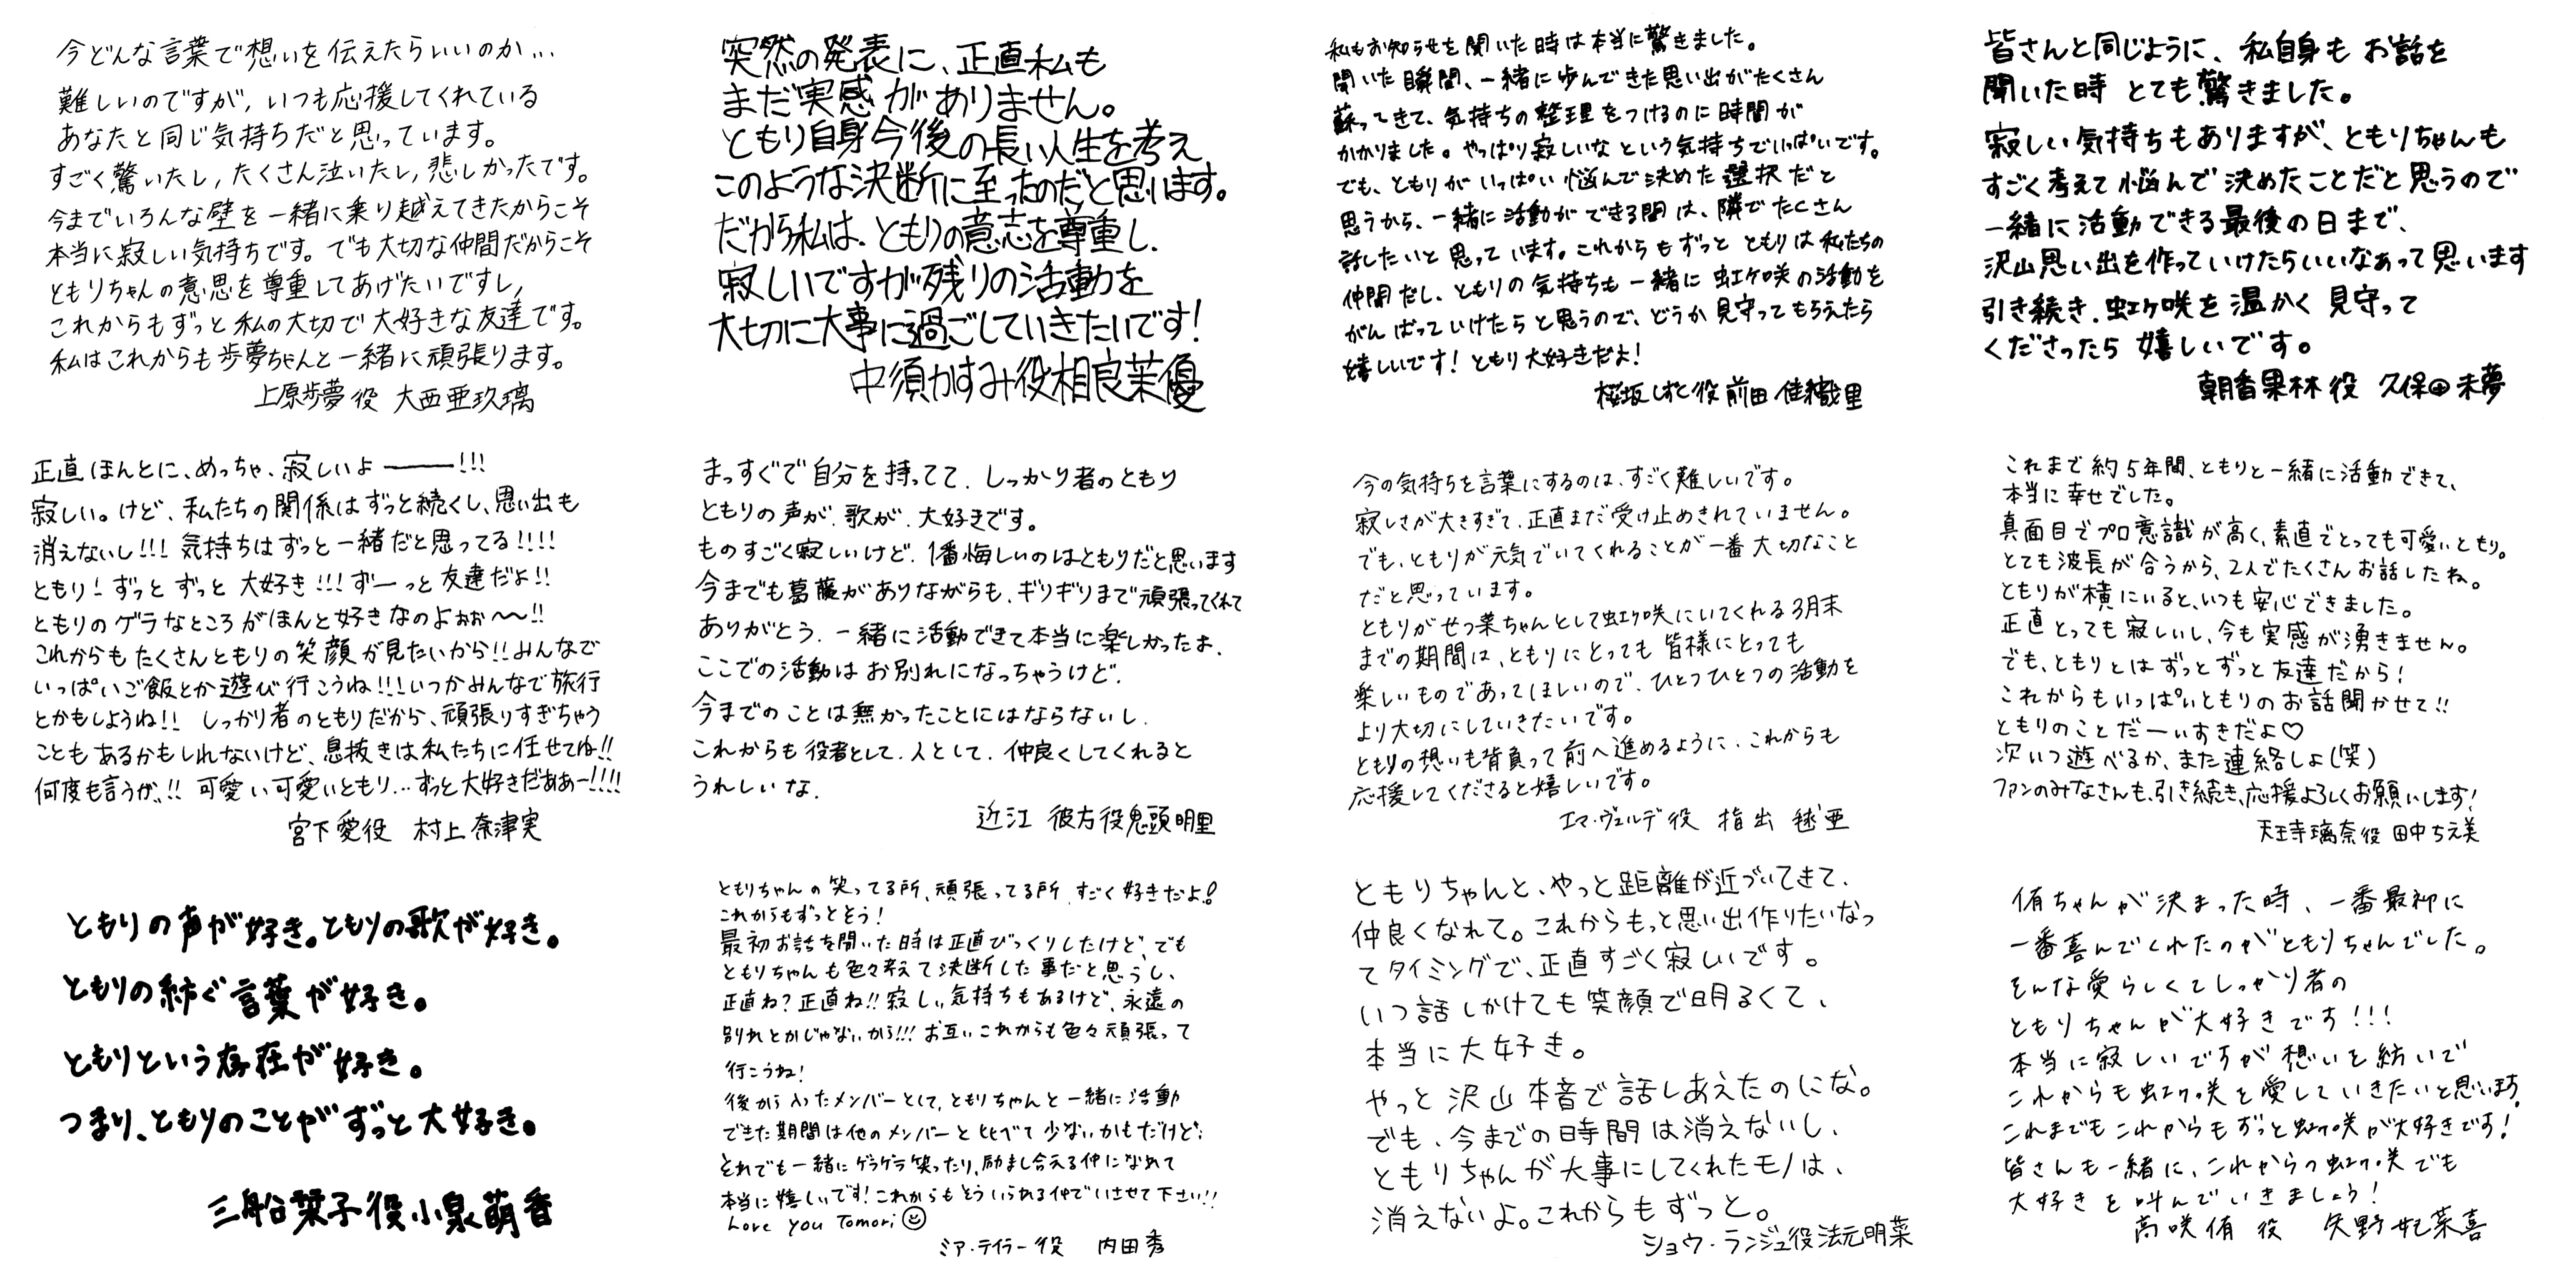 [แปล] จดหมายจากสมาชิกของนิจิกะซากิถึงโทโมริ